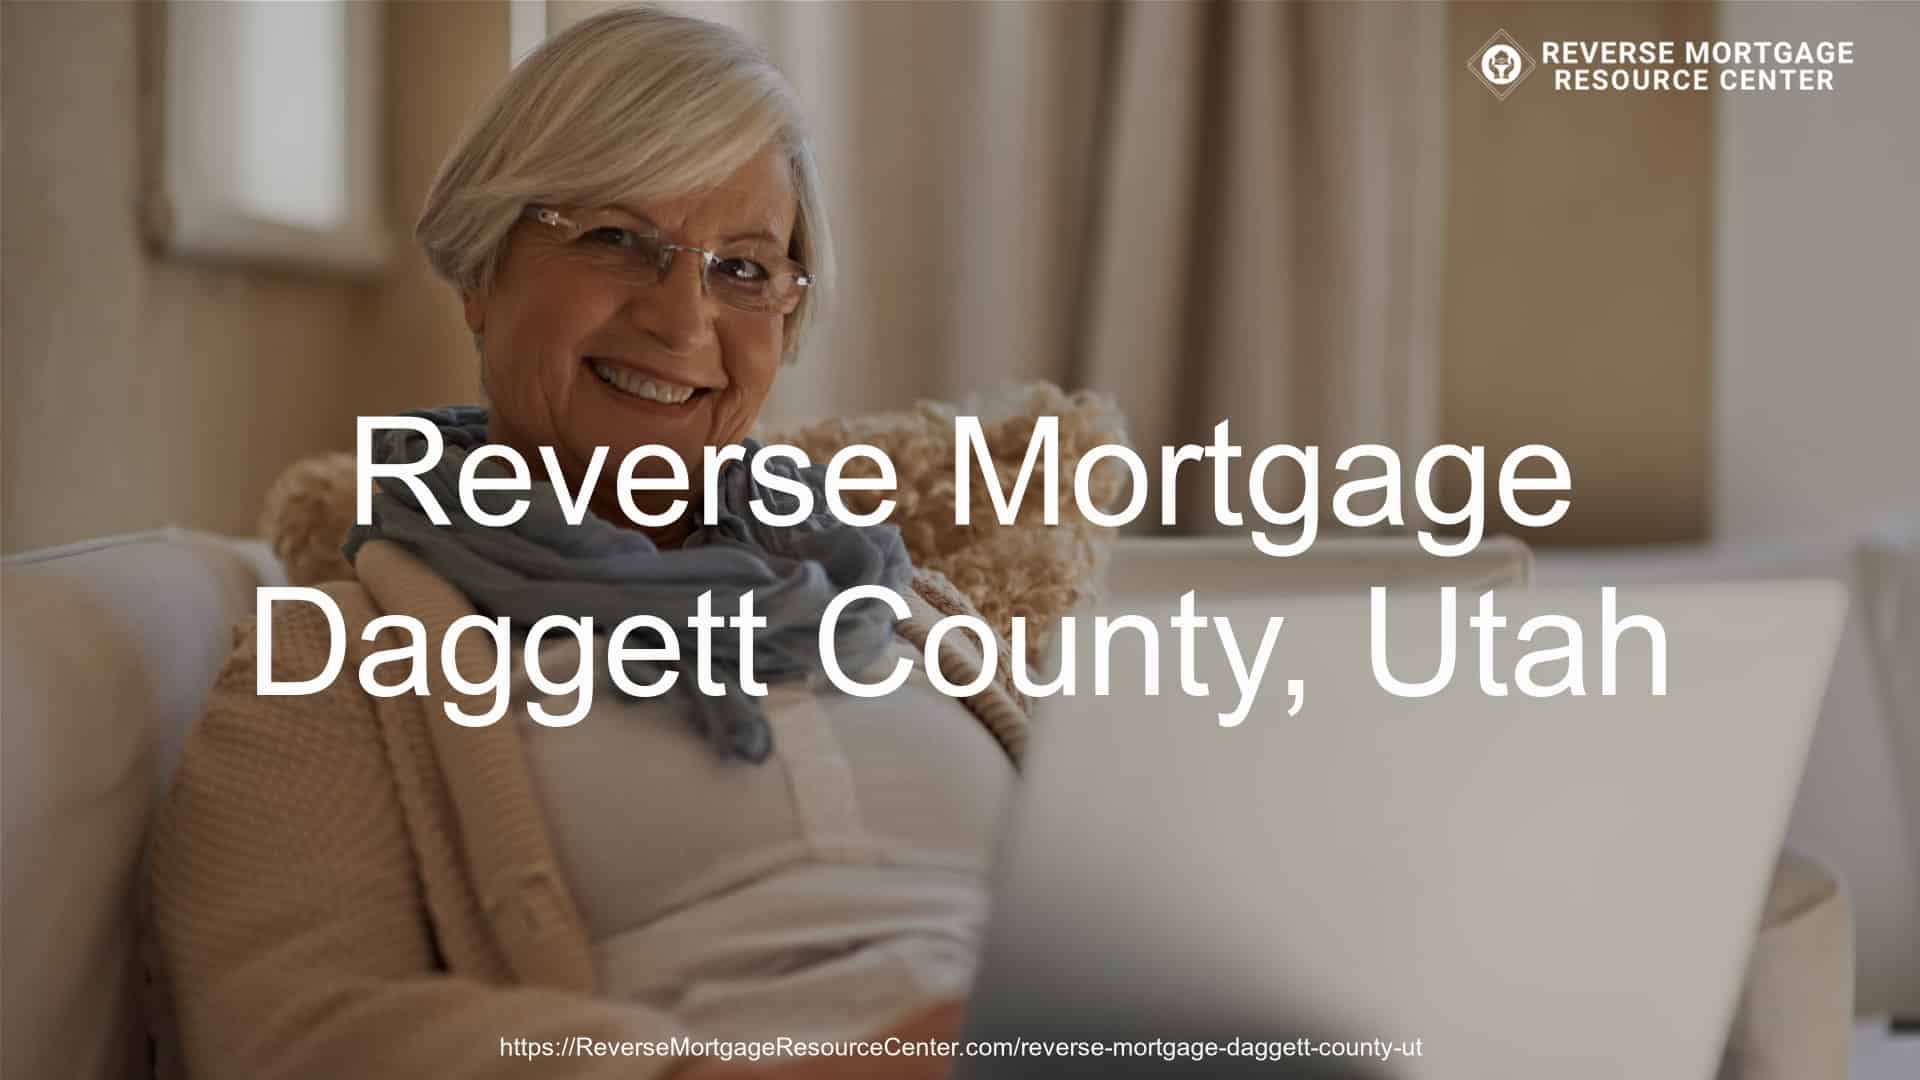 Reverse Mortgage Loans in Daggett County Utah